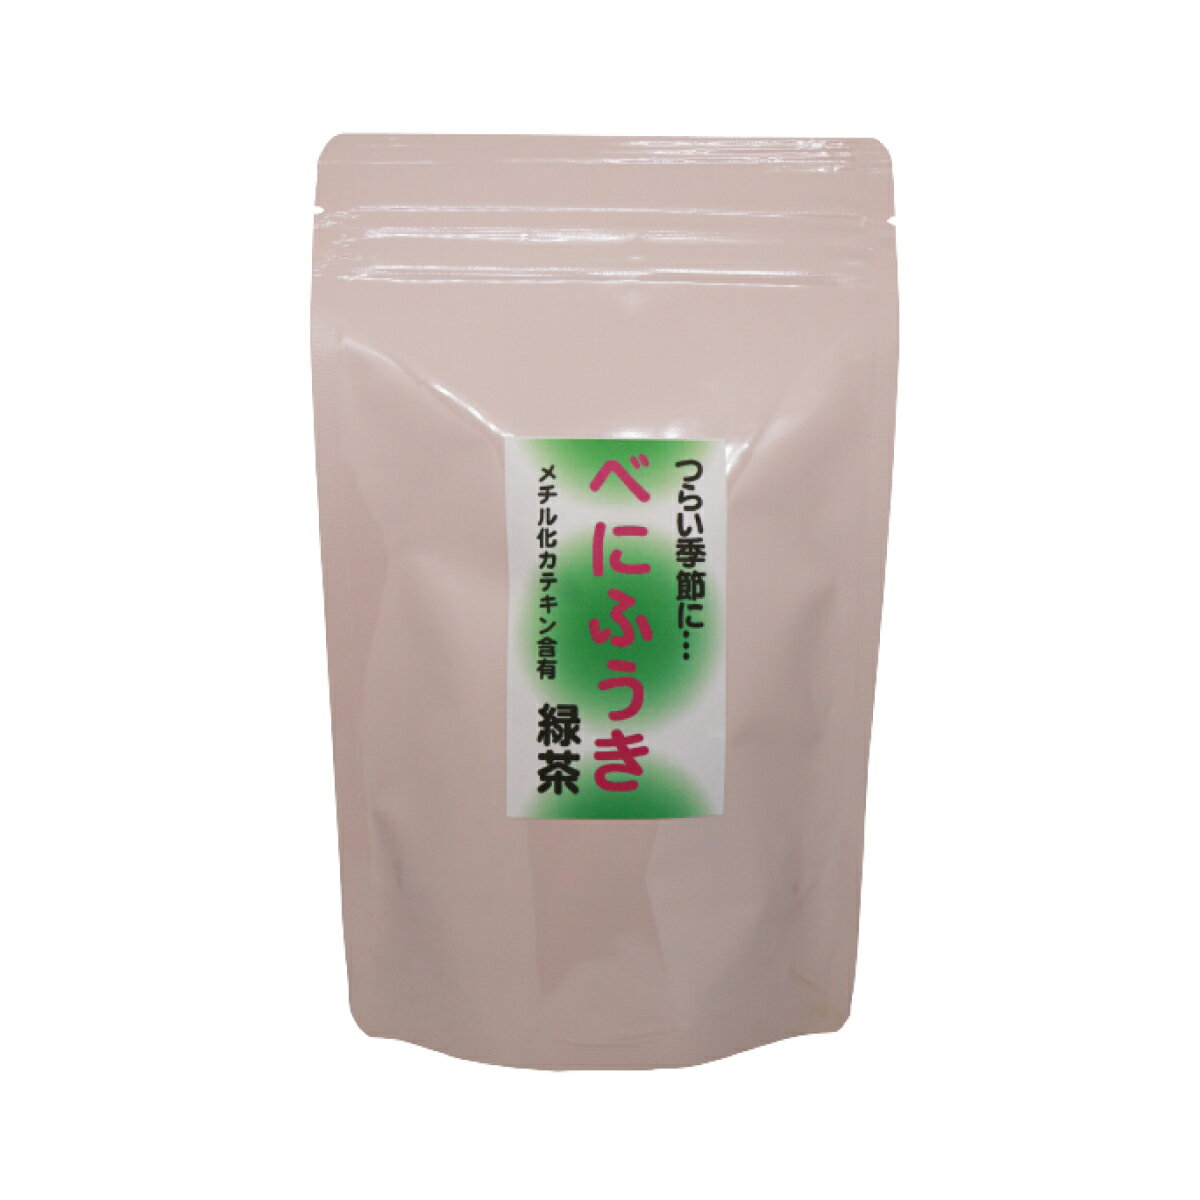 小山製茶 べにふうき緑茶 5g×15包 ティーバッグ 熊本 山鹿 岳間 日本茶 国産 べにふうき 緑茶 敬老の日